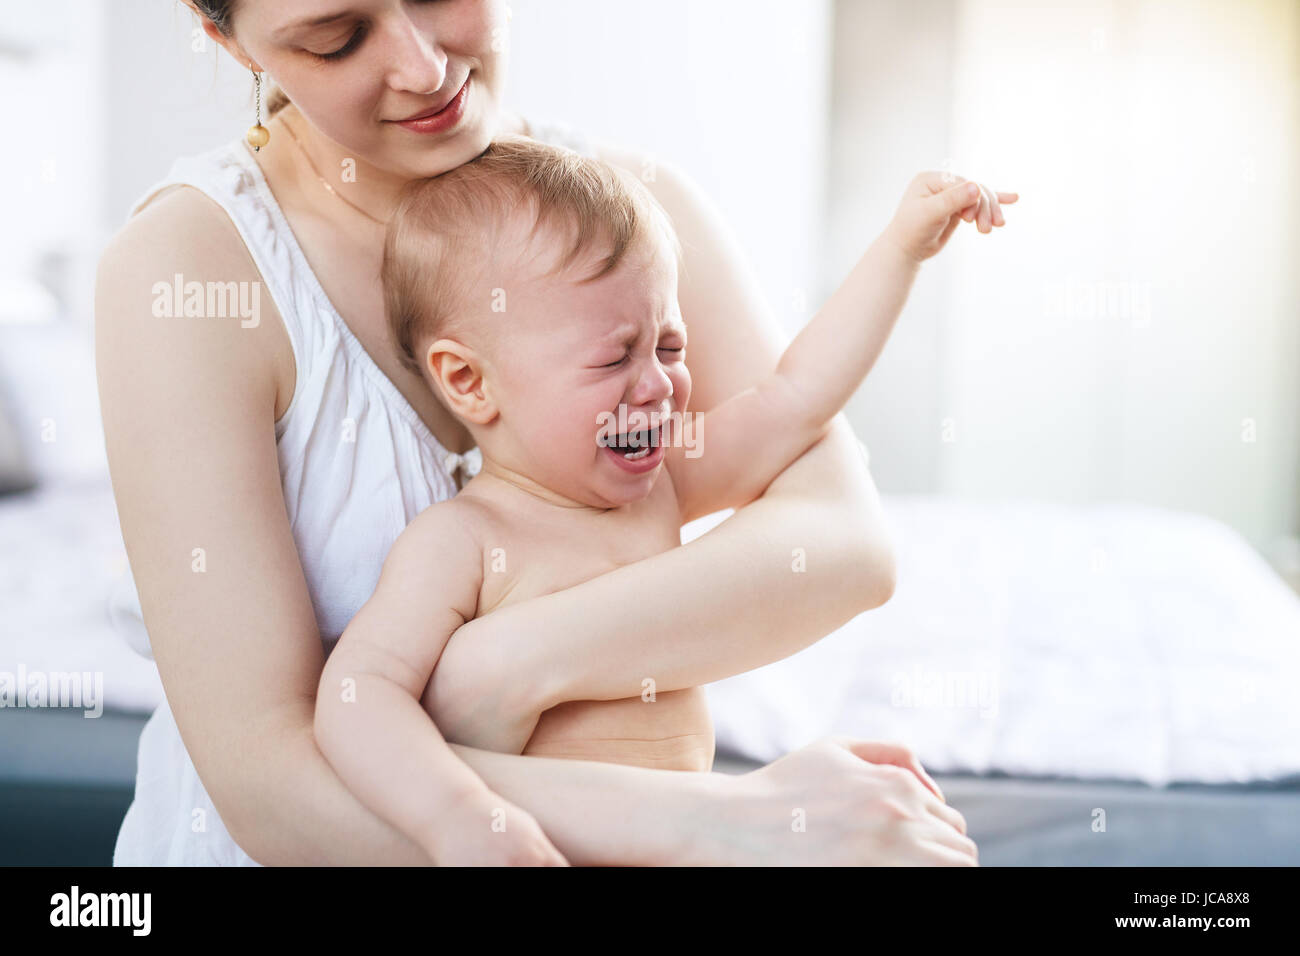 Junge Frau mit schreienden Baby auf Händen. Helle weiße Farben. Stockfoto